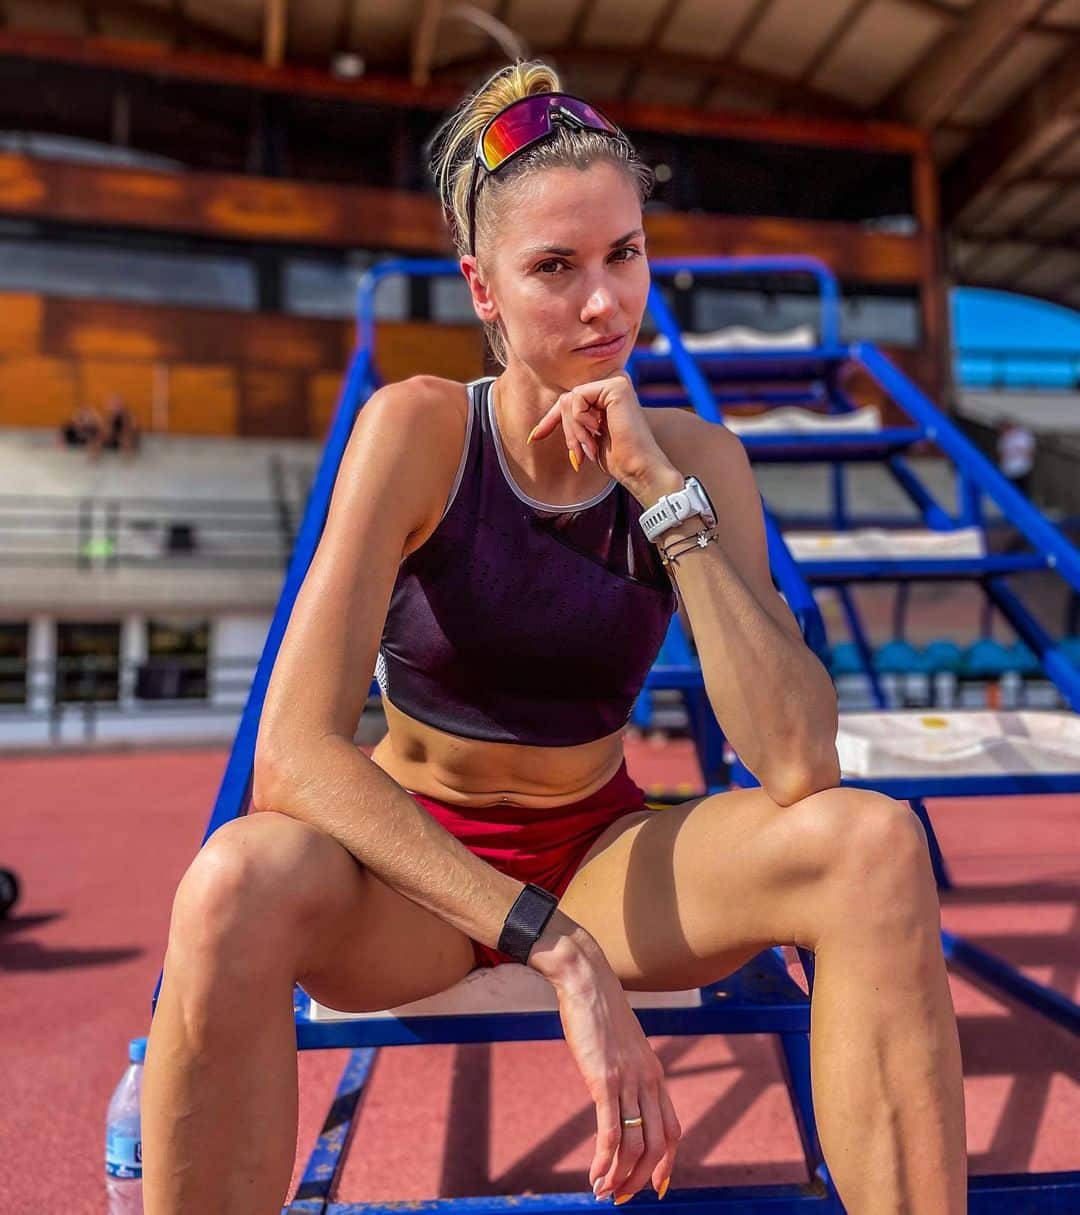 Ίγκα Μπάουμγκαρτ: Η αθλήτρια που όταν δε τρέχει βγάζει selfie και κάνει το μοντέλο. Δες φωτογραφίες